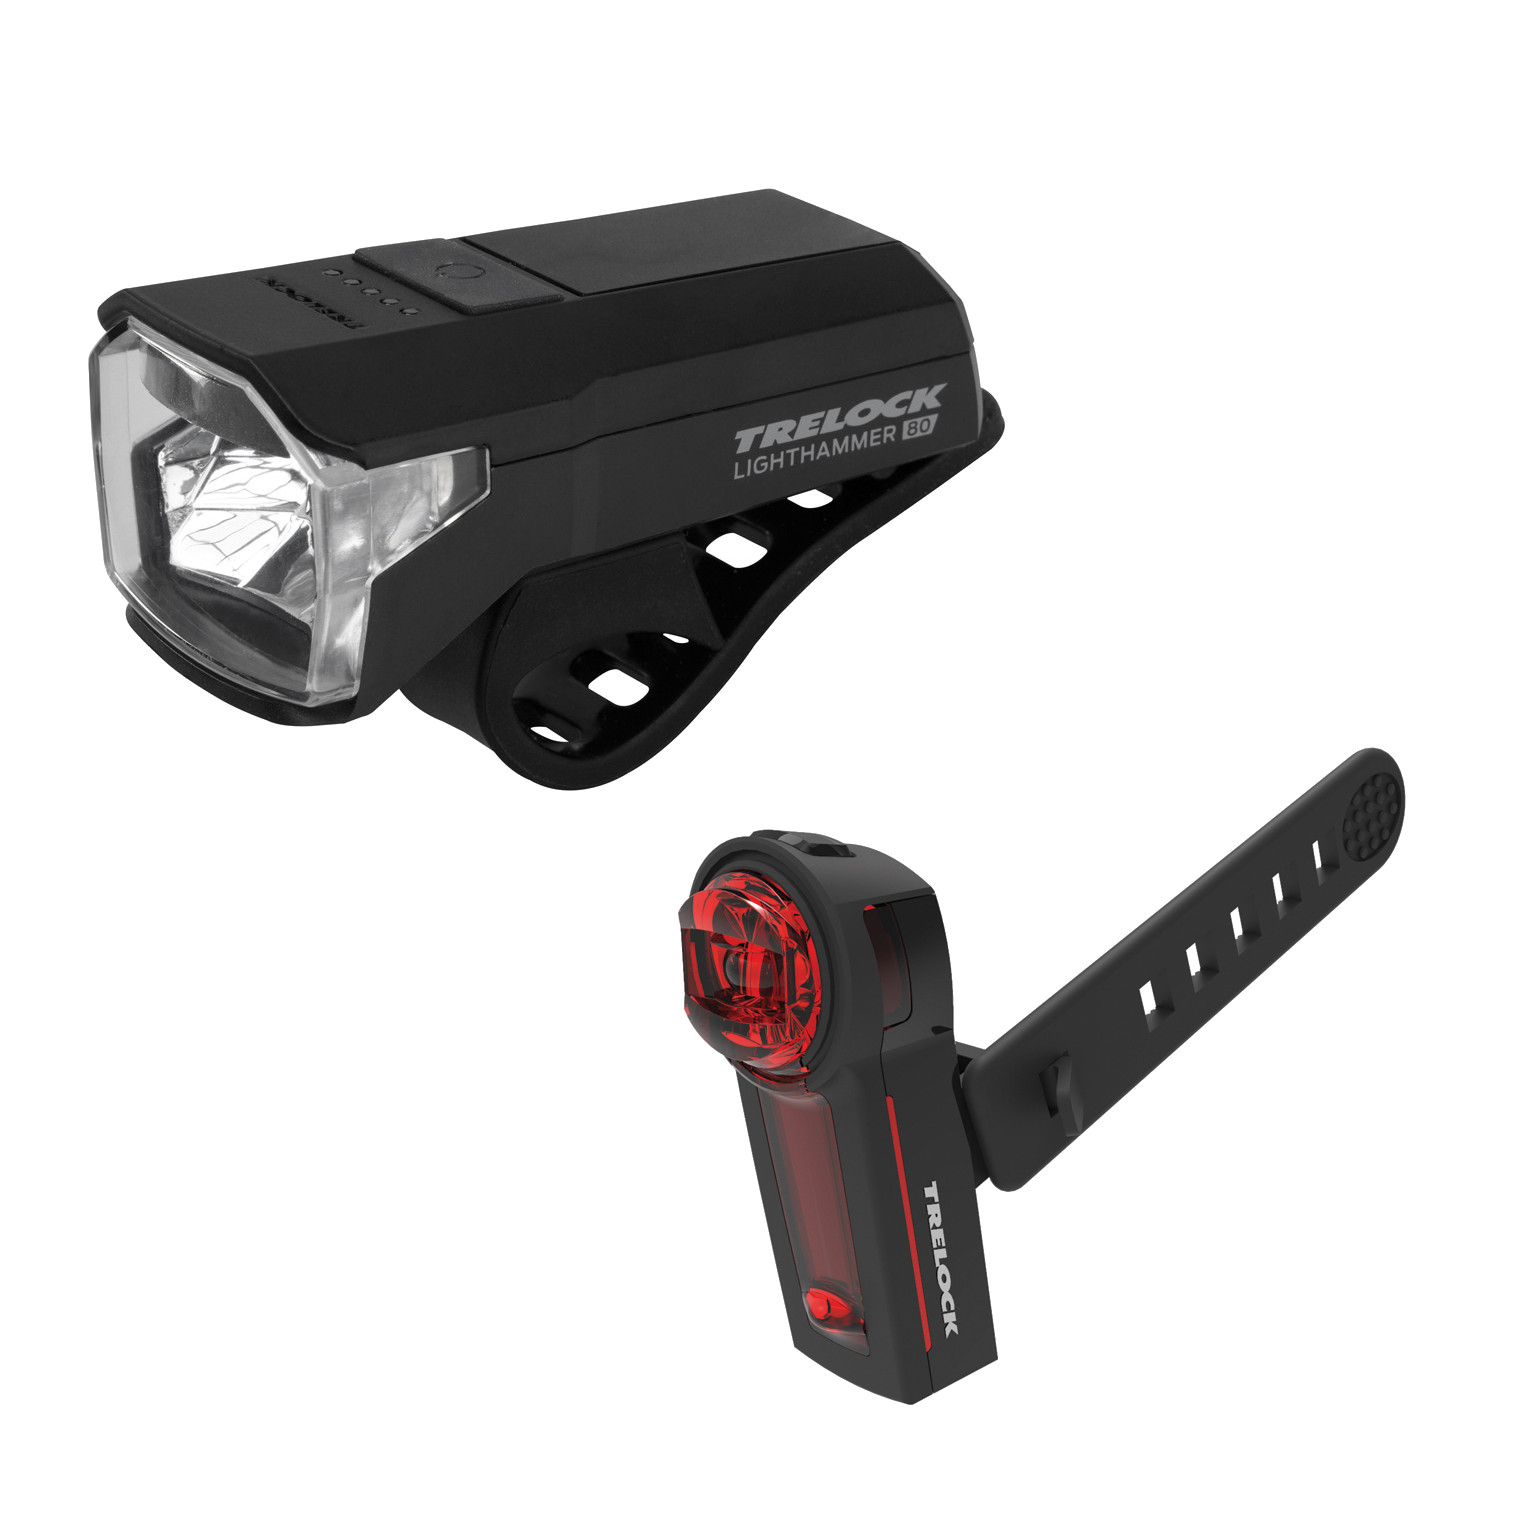 Productfoto van Trelock LS 480 Lighthammer USB + LS 740 Vector Signal - Fietsverlichtingsset